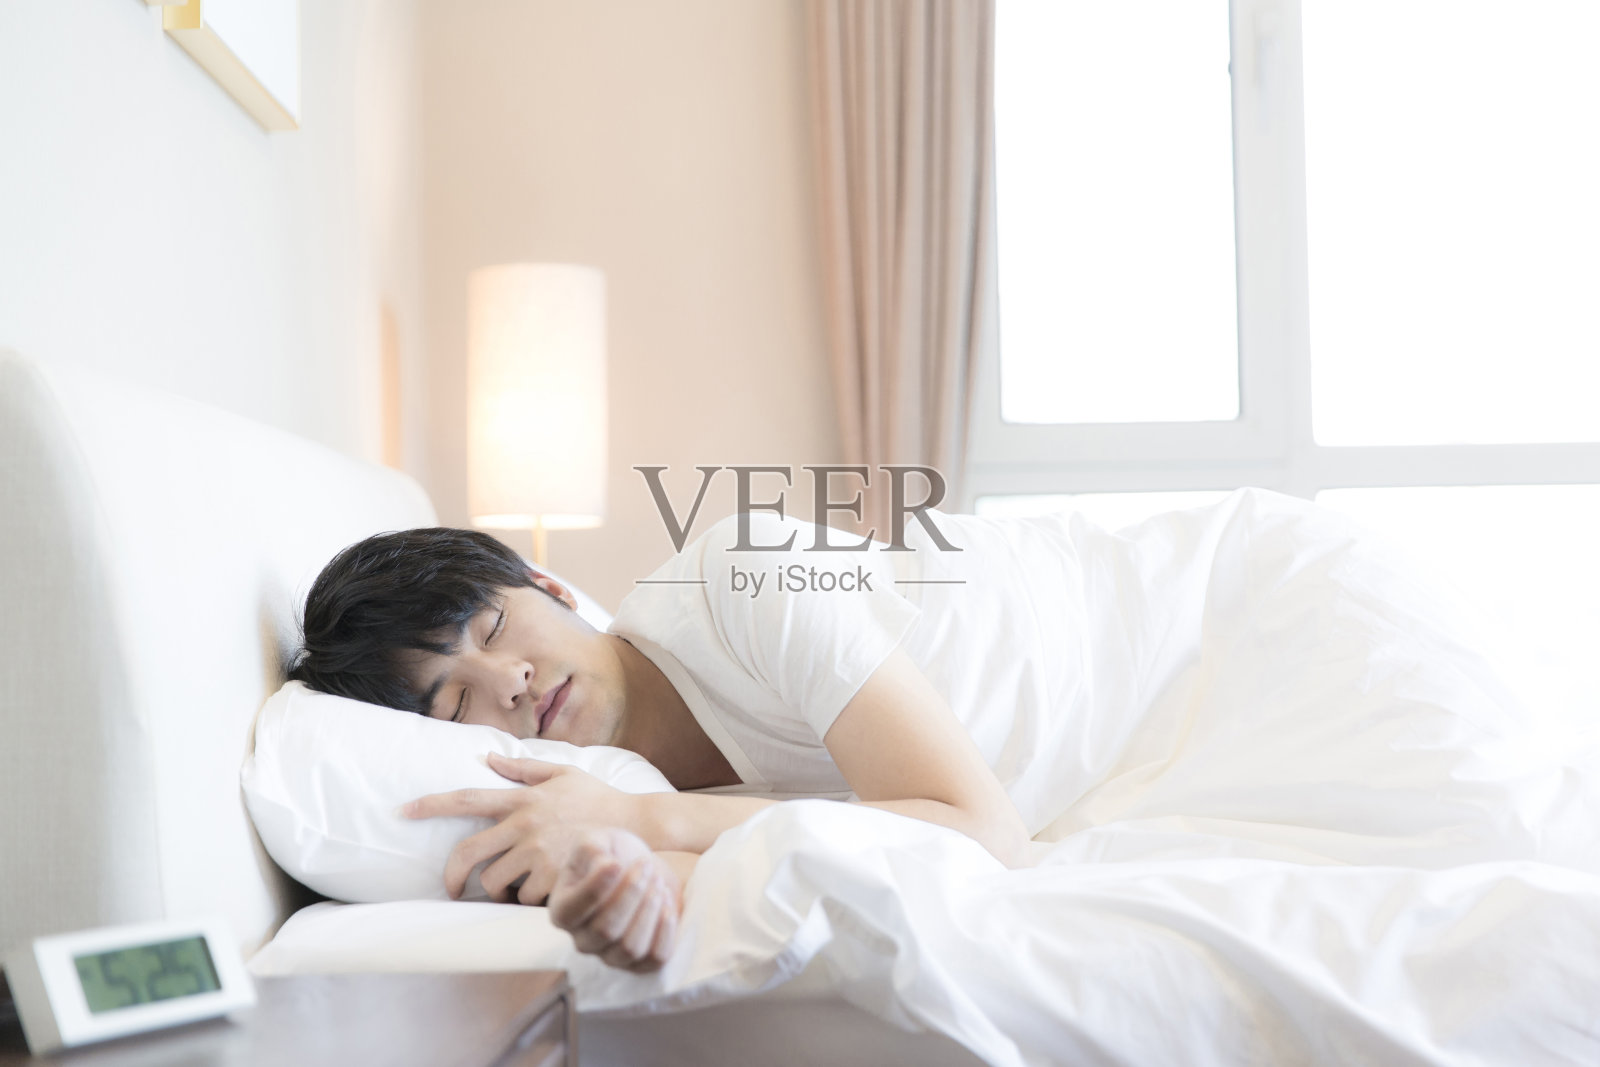 年轻的东亚人睡在他的一边在一个现代家庭卧室床-库存照片照片摄影图片